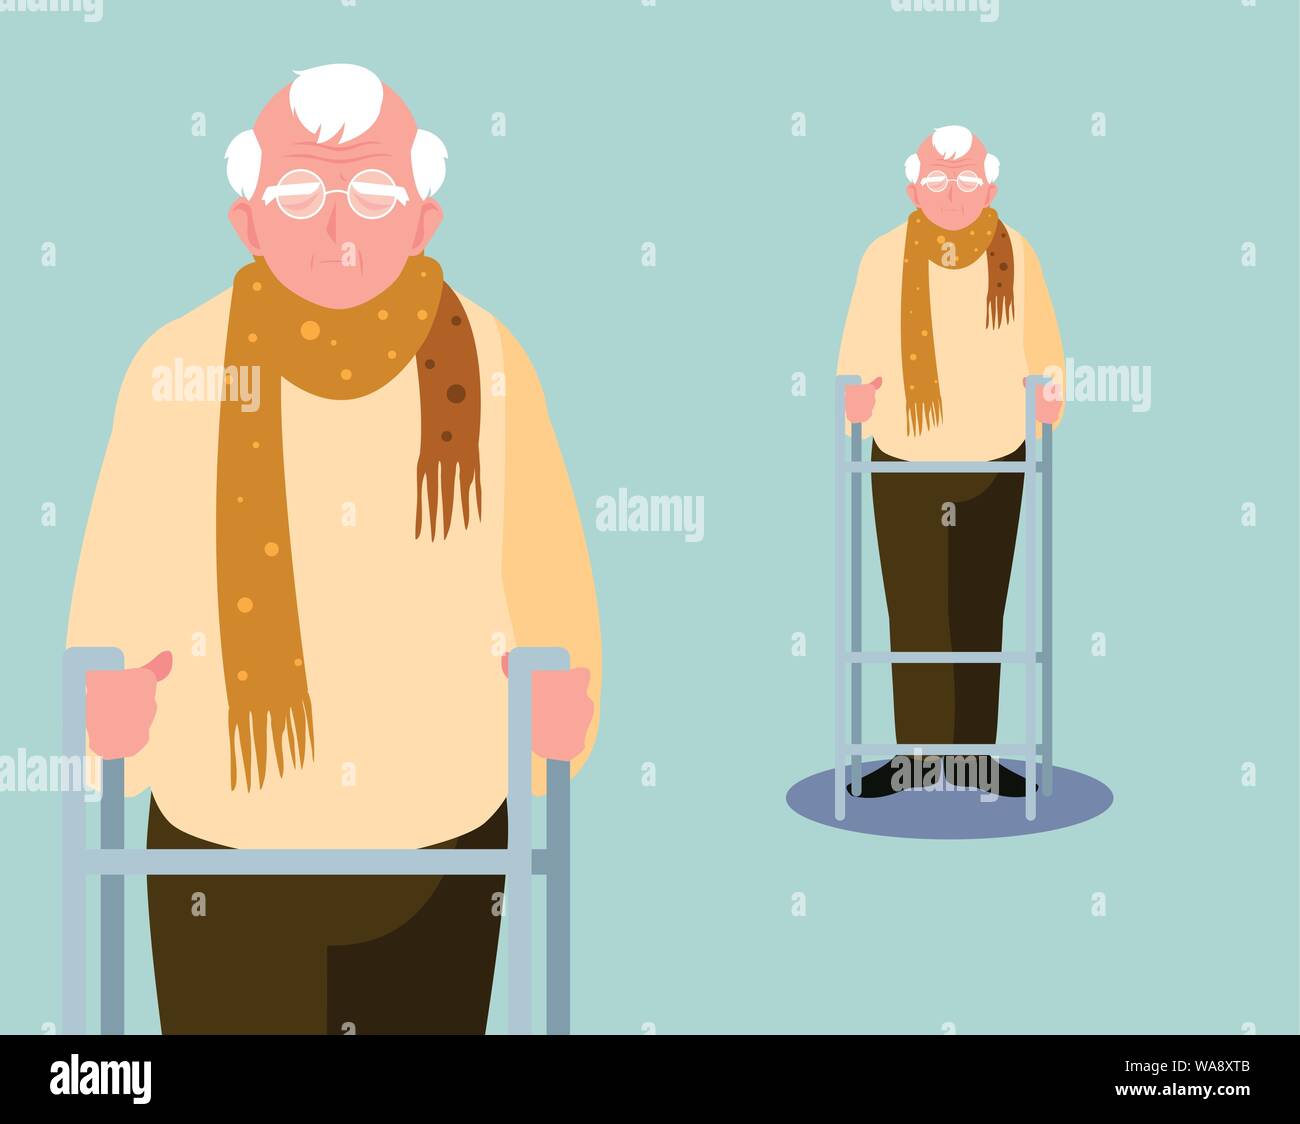 old man elder elderly adult aged vector ilustration Stock Vector